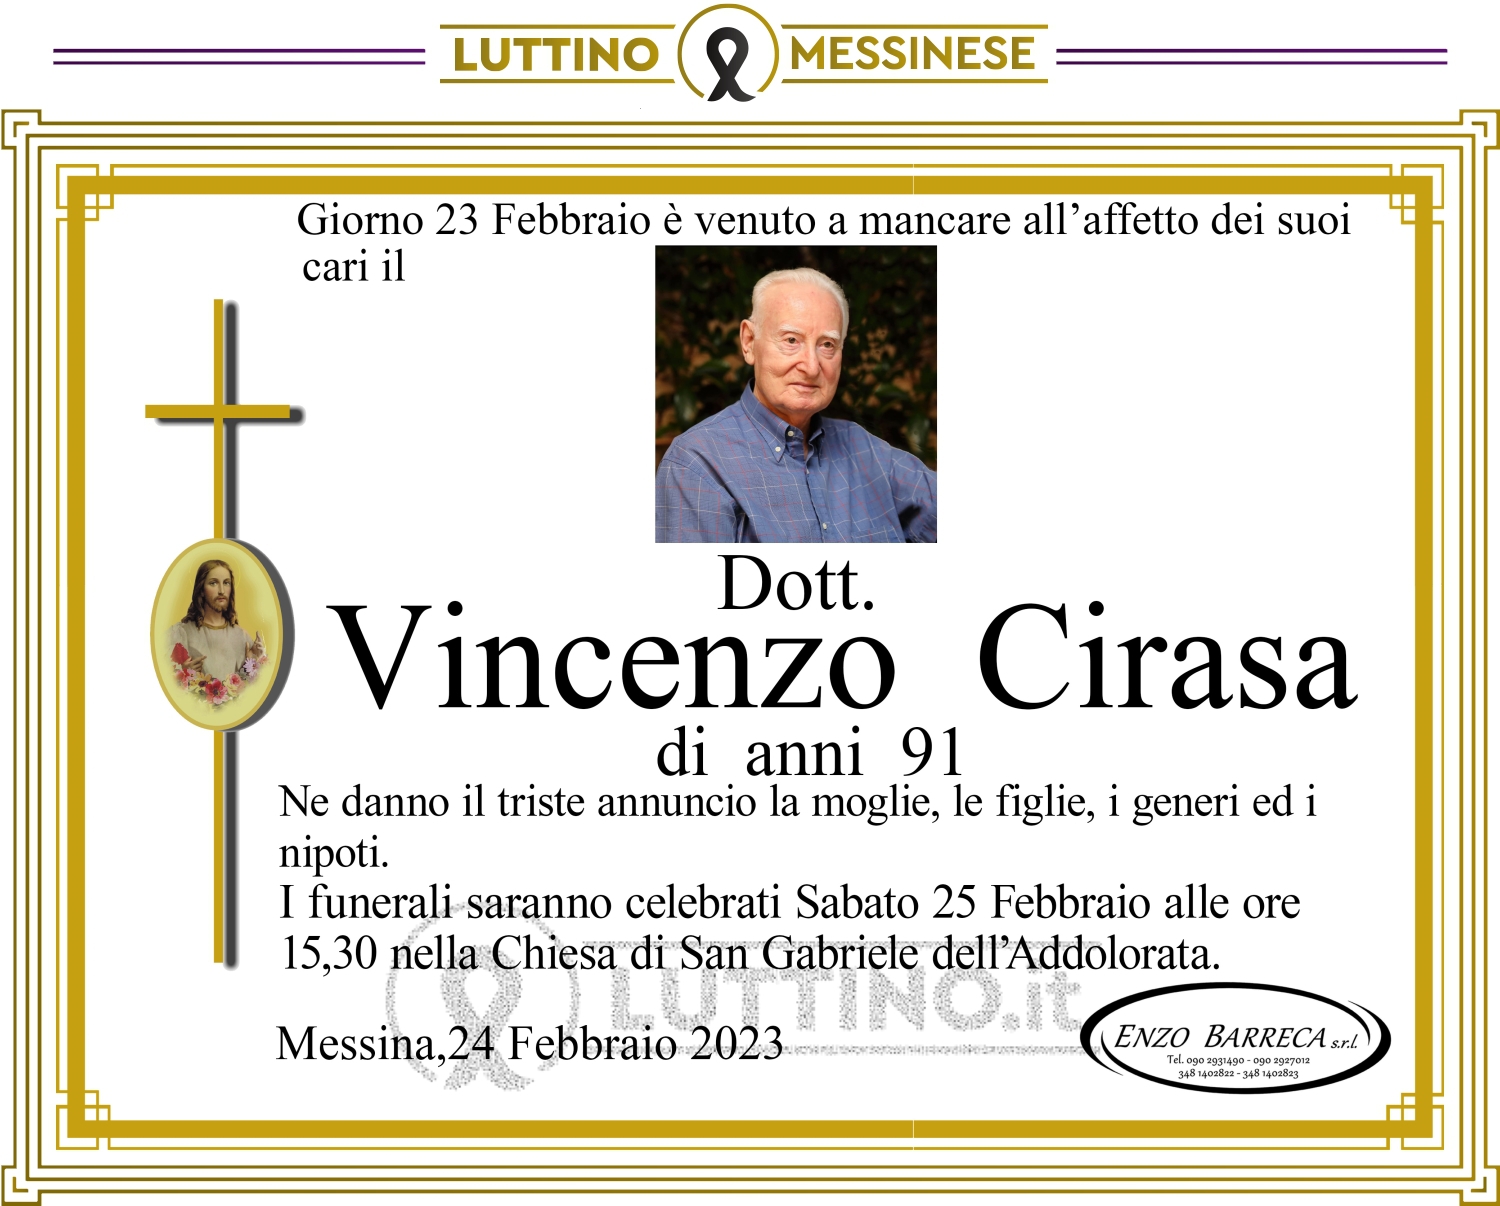 Vincenzo Cirasa